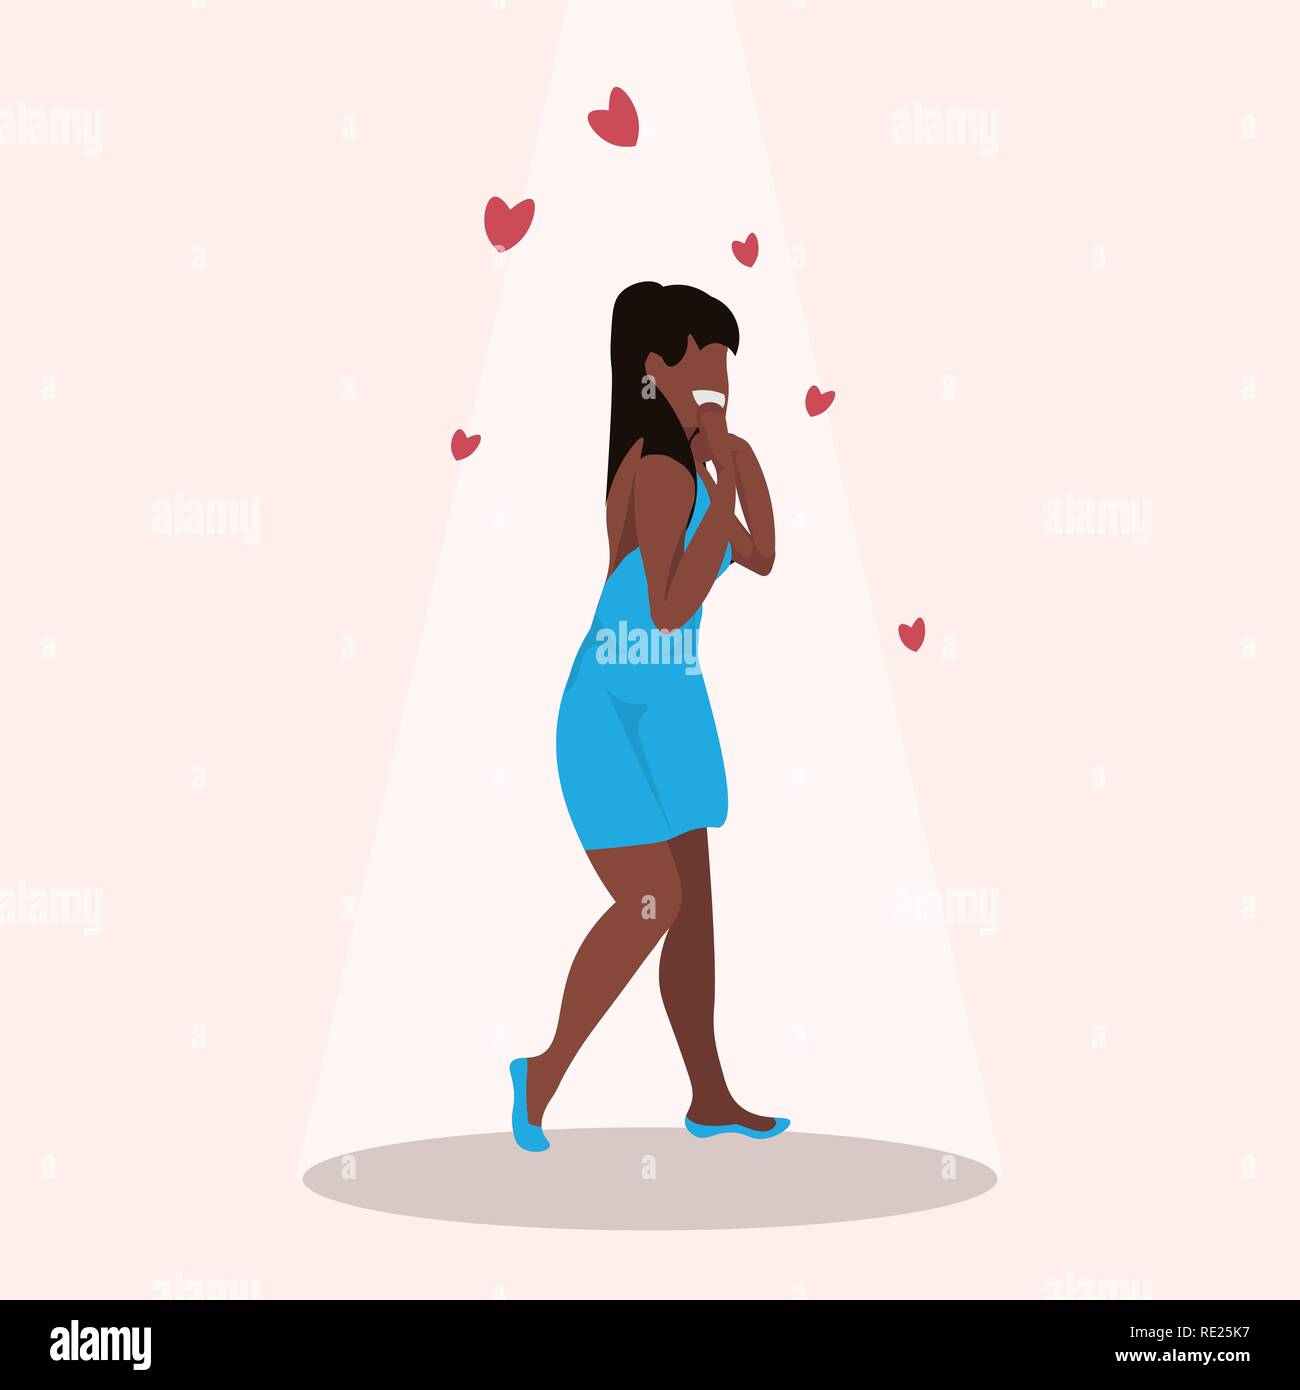 Überrascht afrikanische amerikanische Frau hält Wangen von Hand happy valentines day Feier Konzept schönes Mädchen über den roten Herzen formen flach in voller Länge Stock Vektor